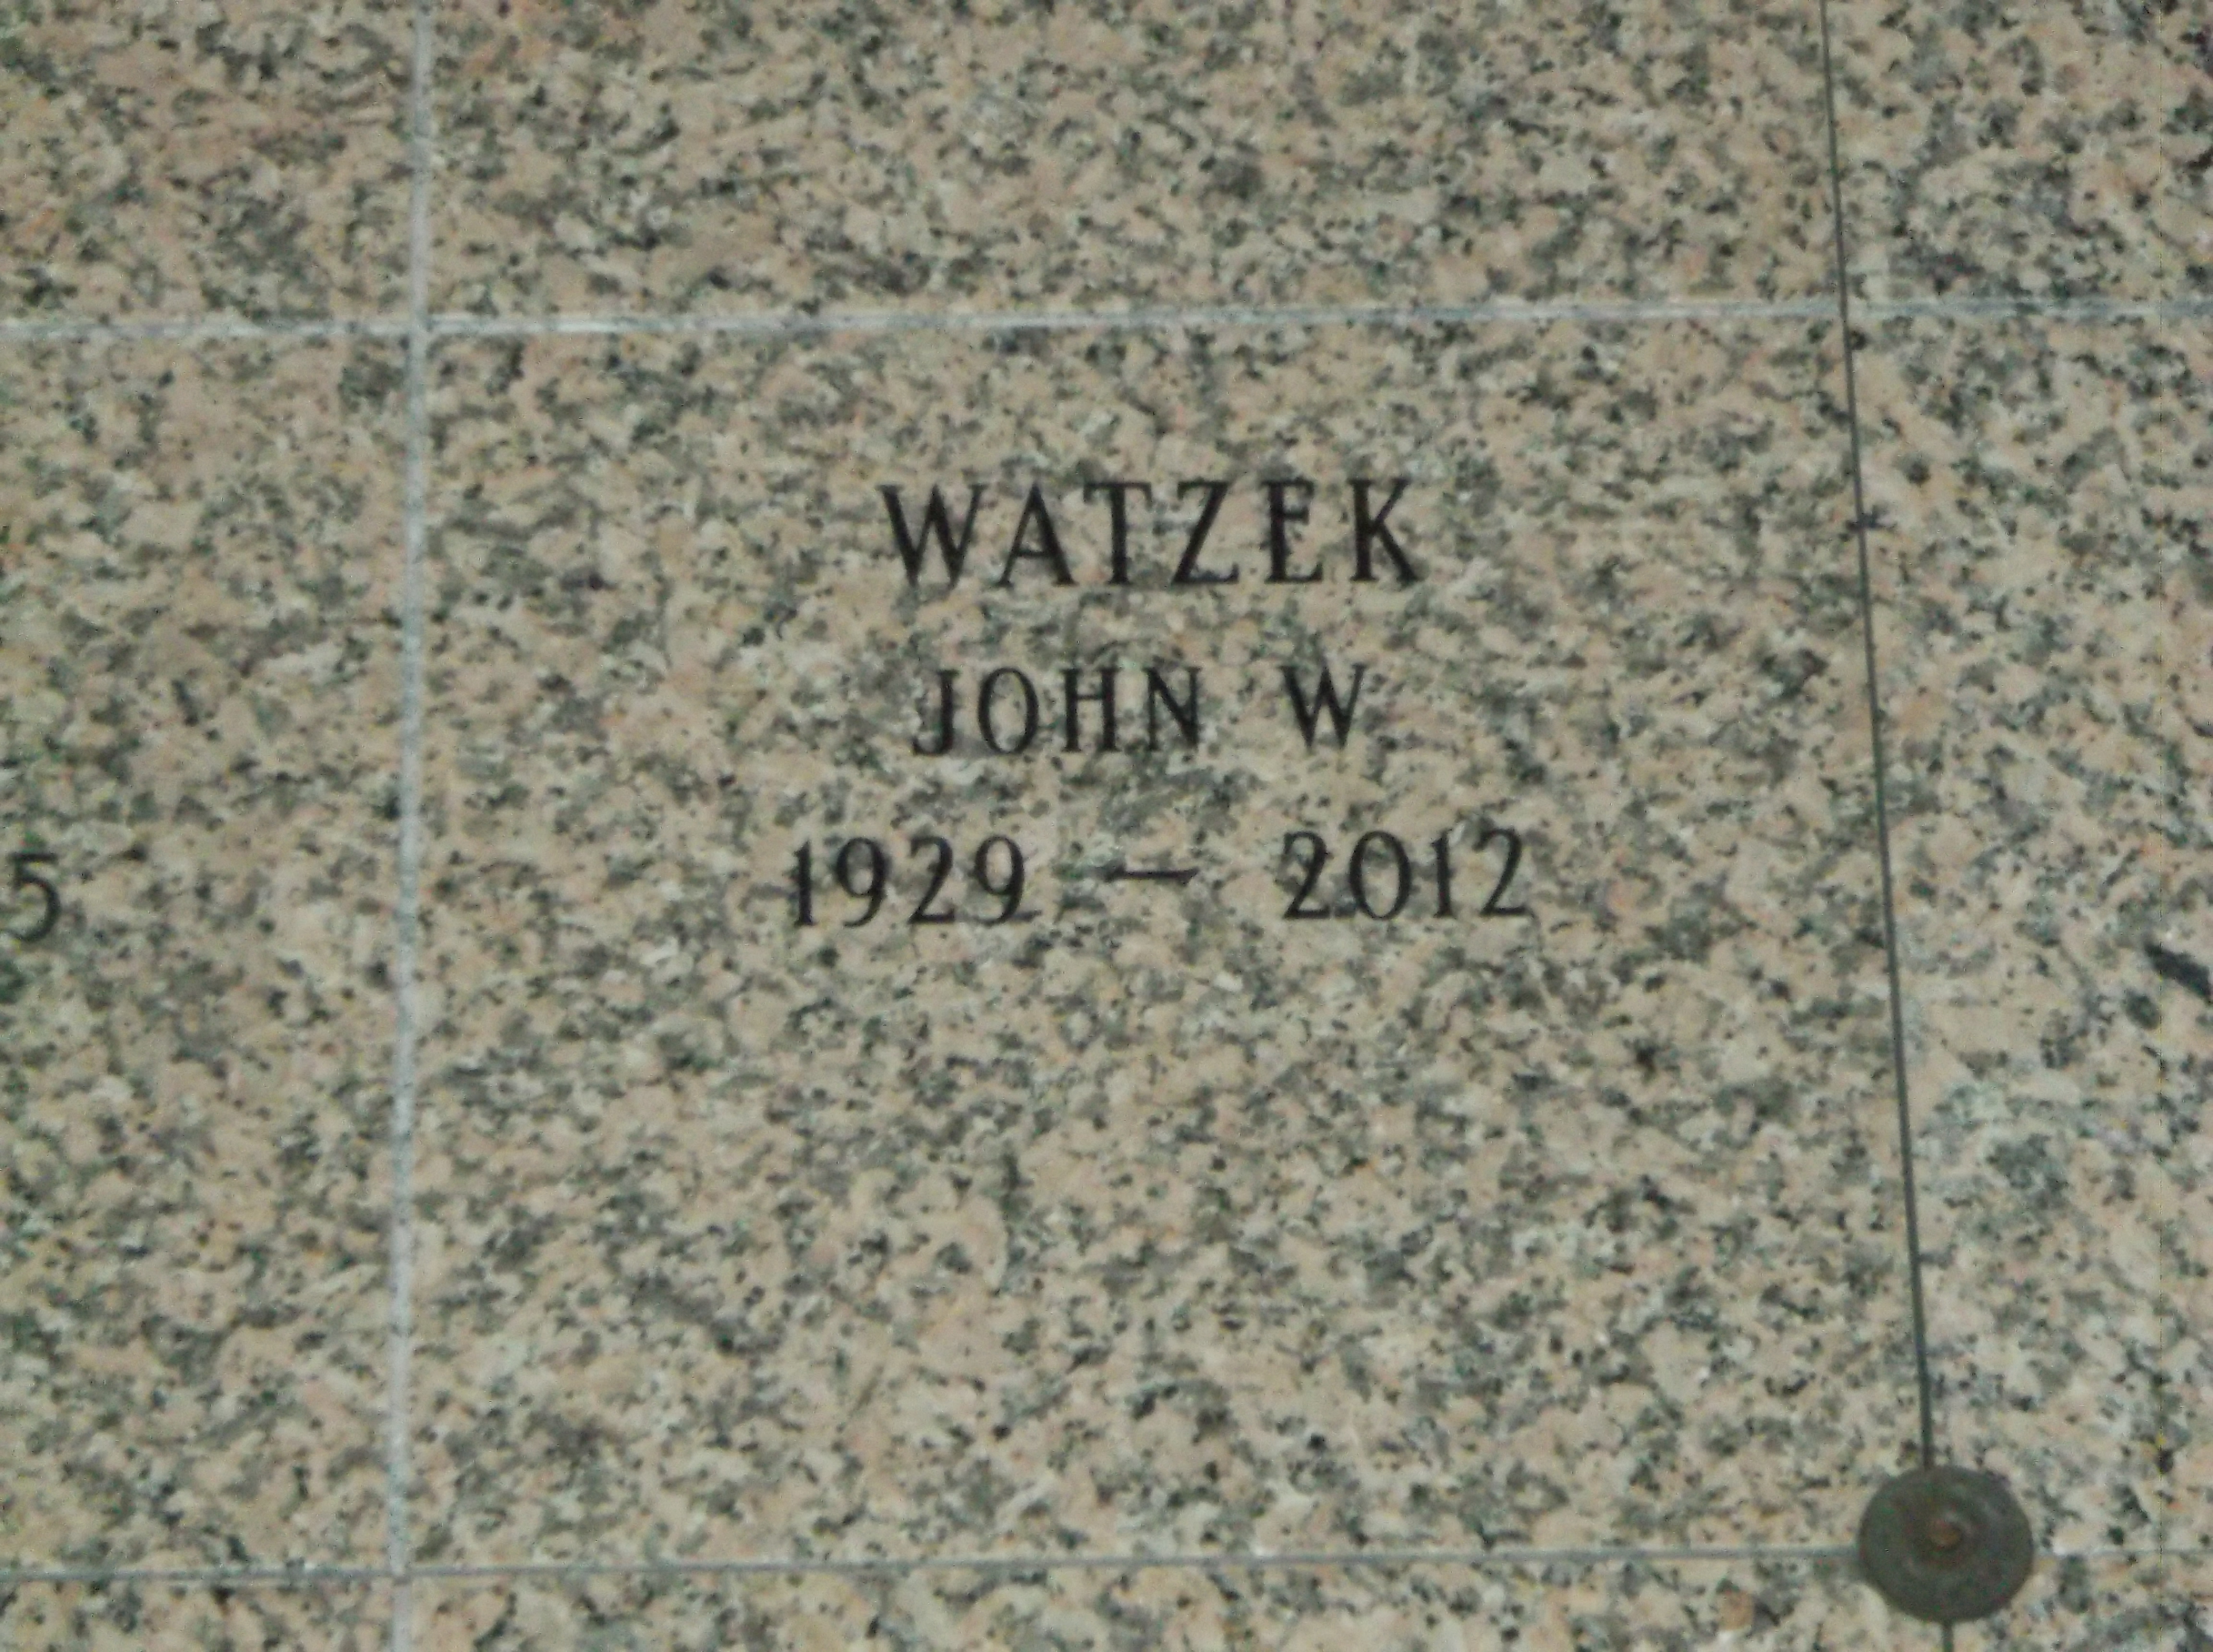 John W Watzek